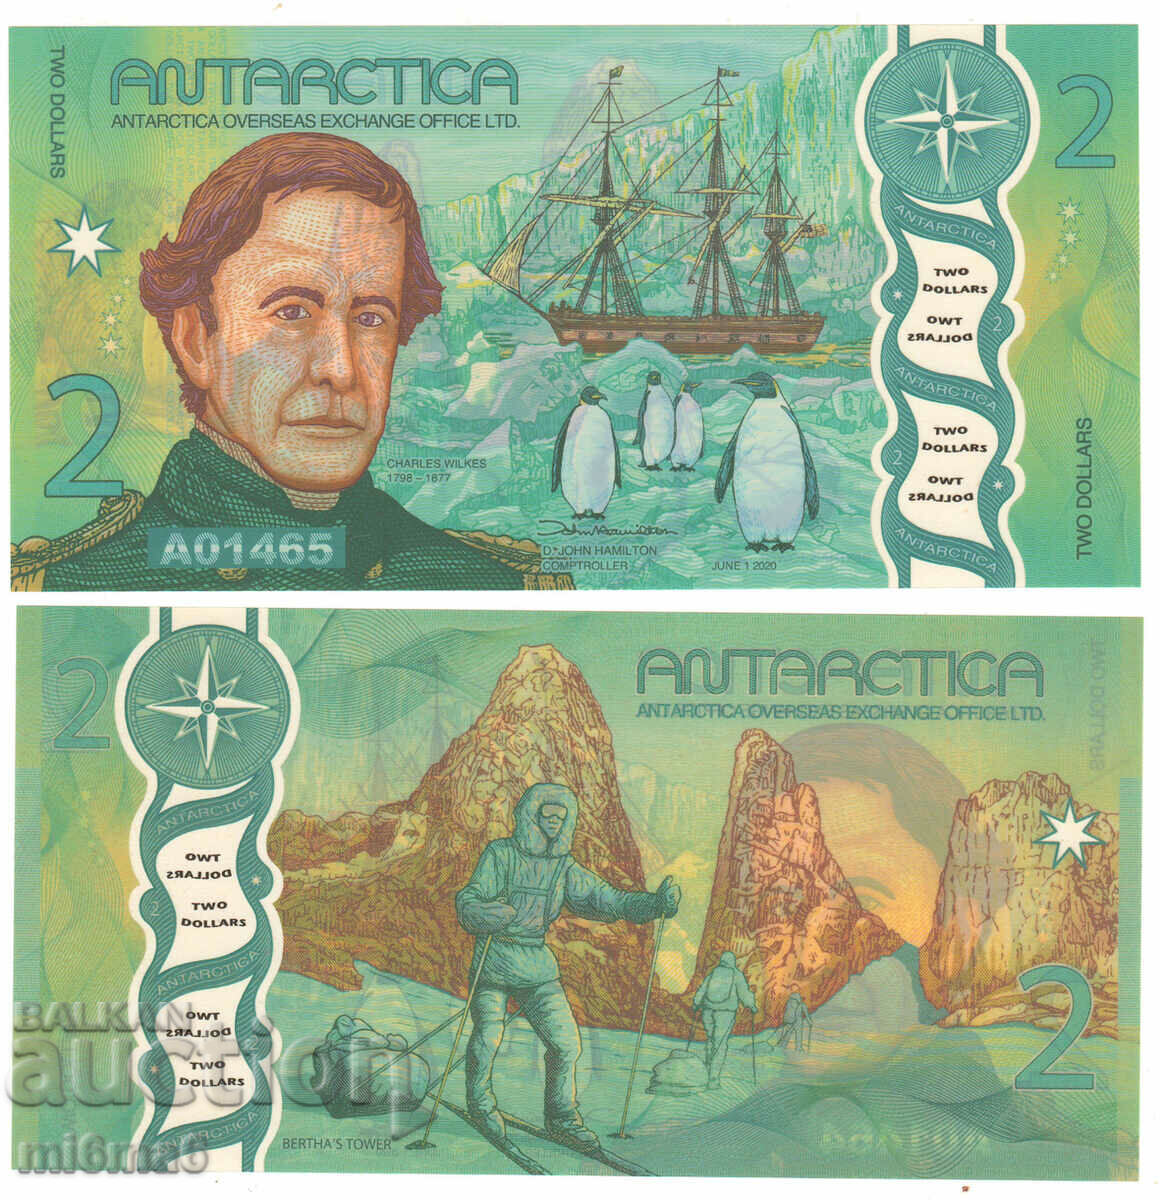 MI6MA6 - Antarctica $2